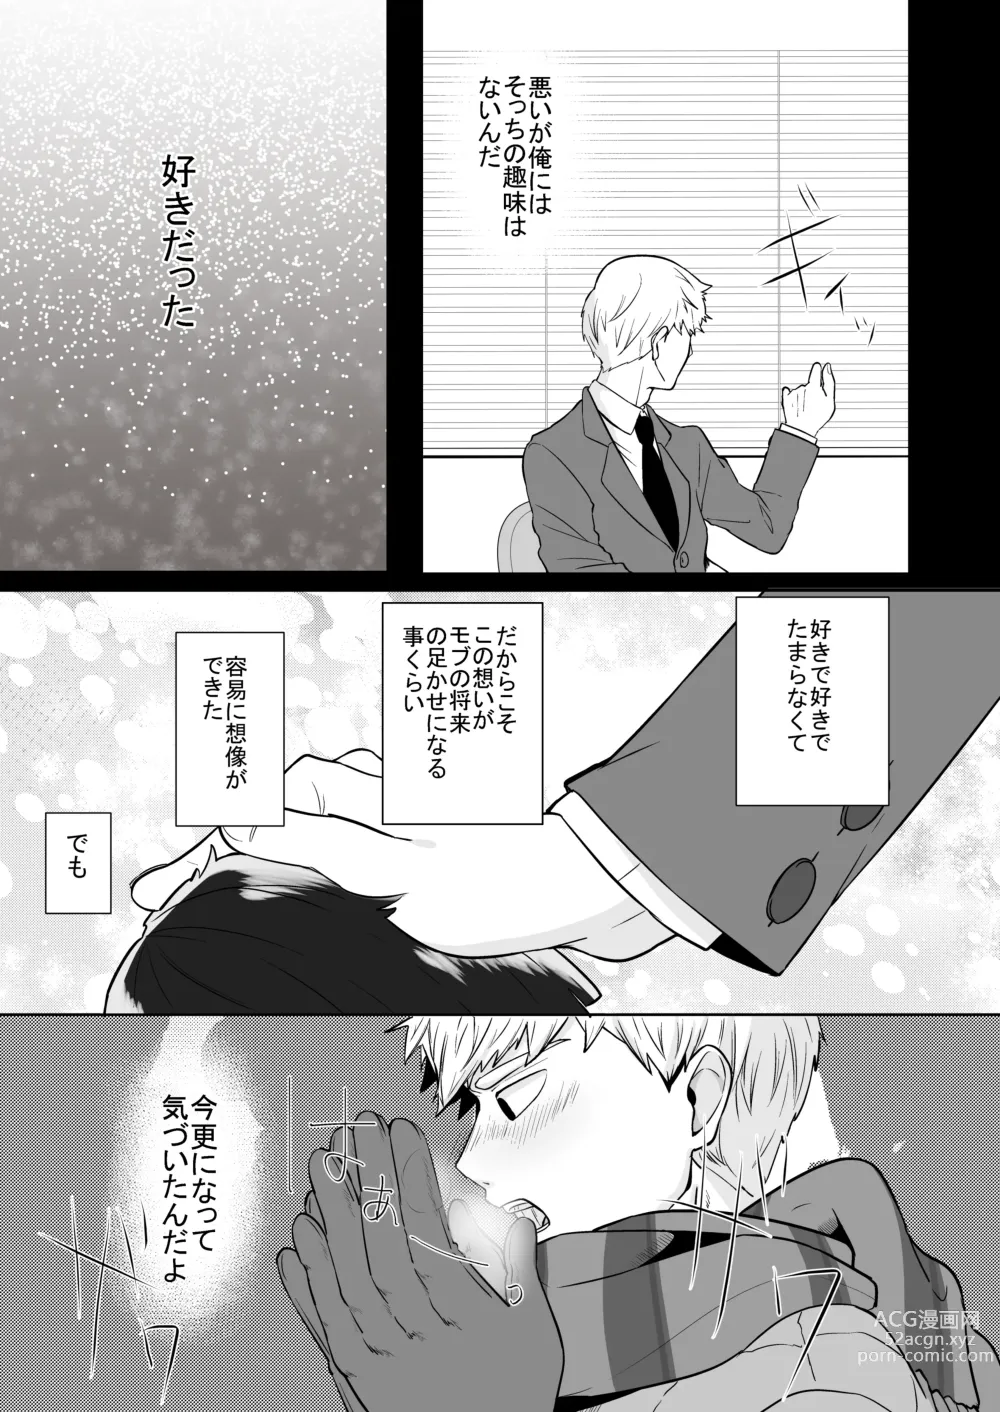 Page 7 of doujinshi Dearest love